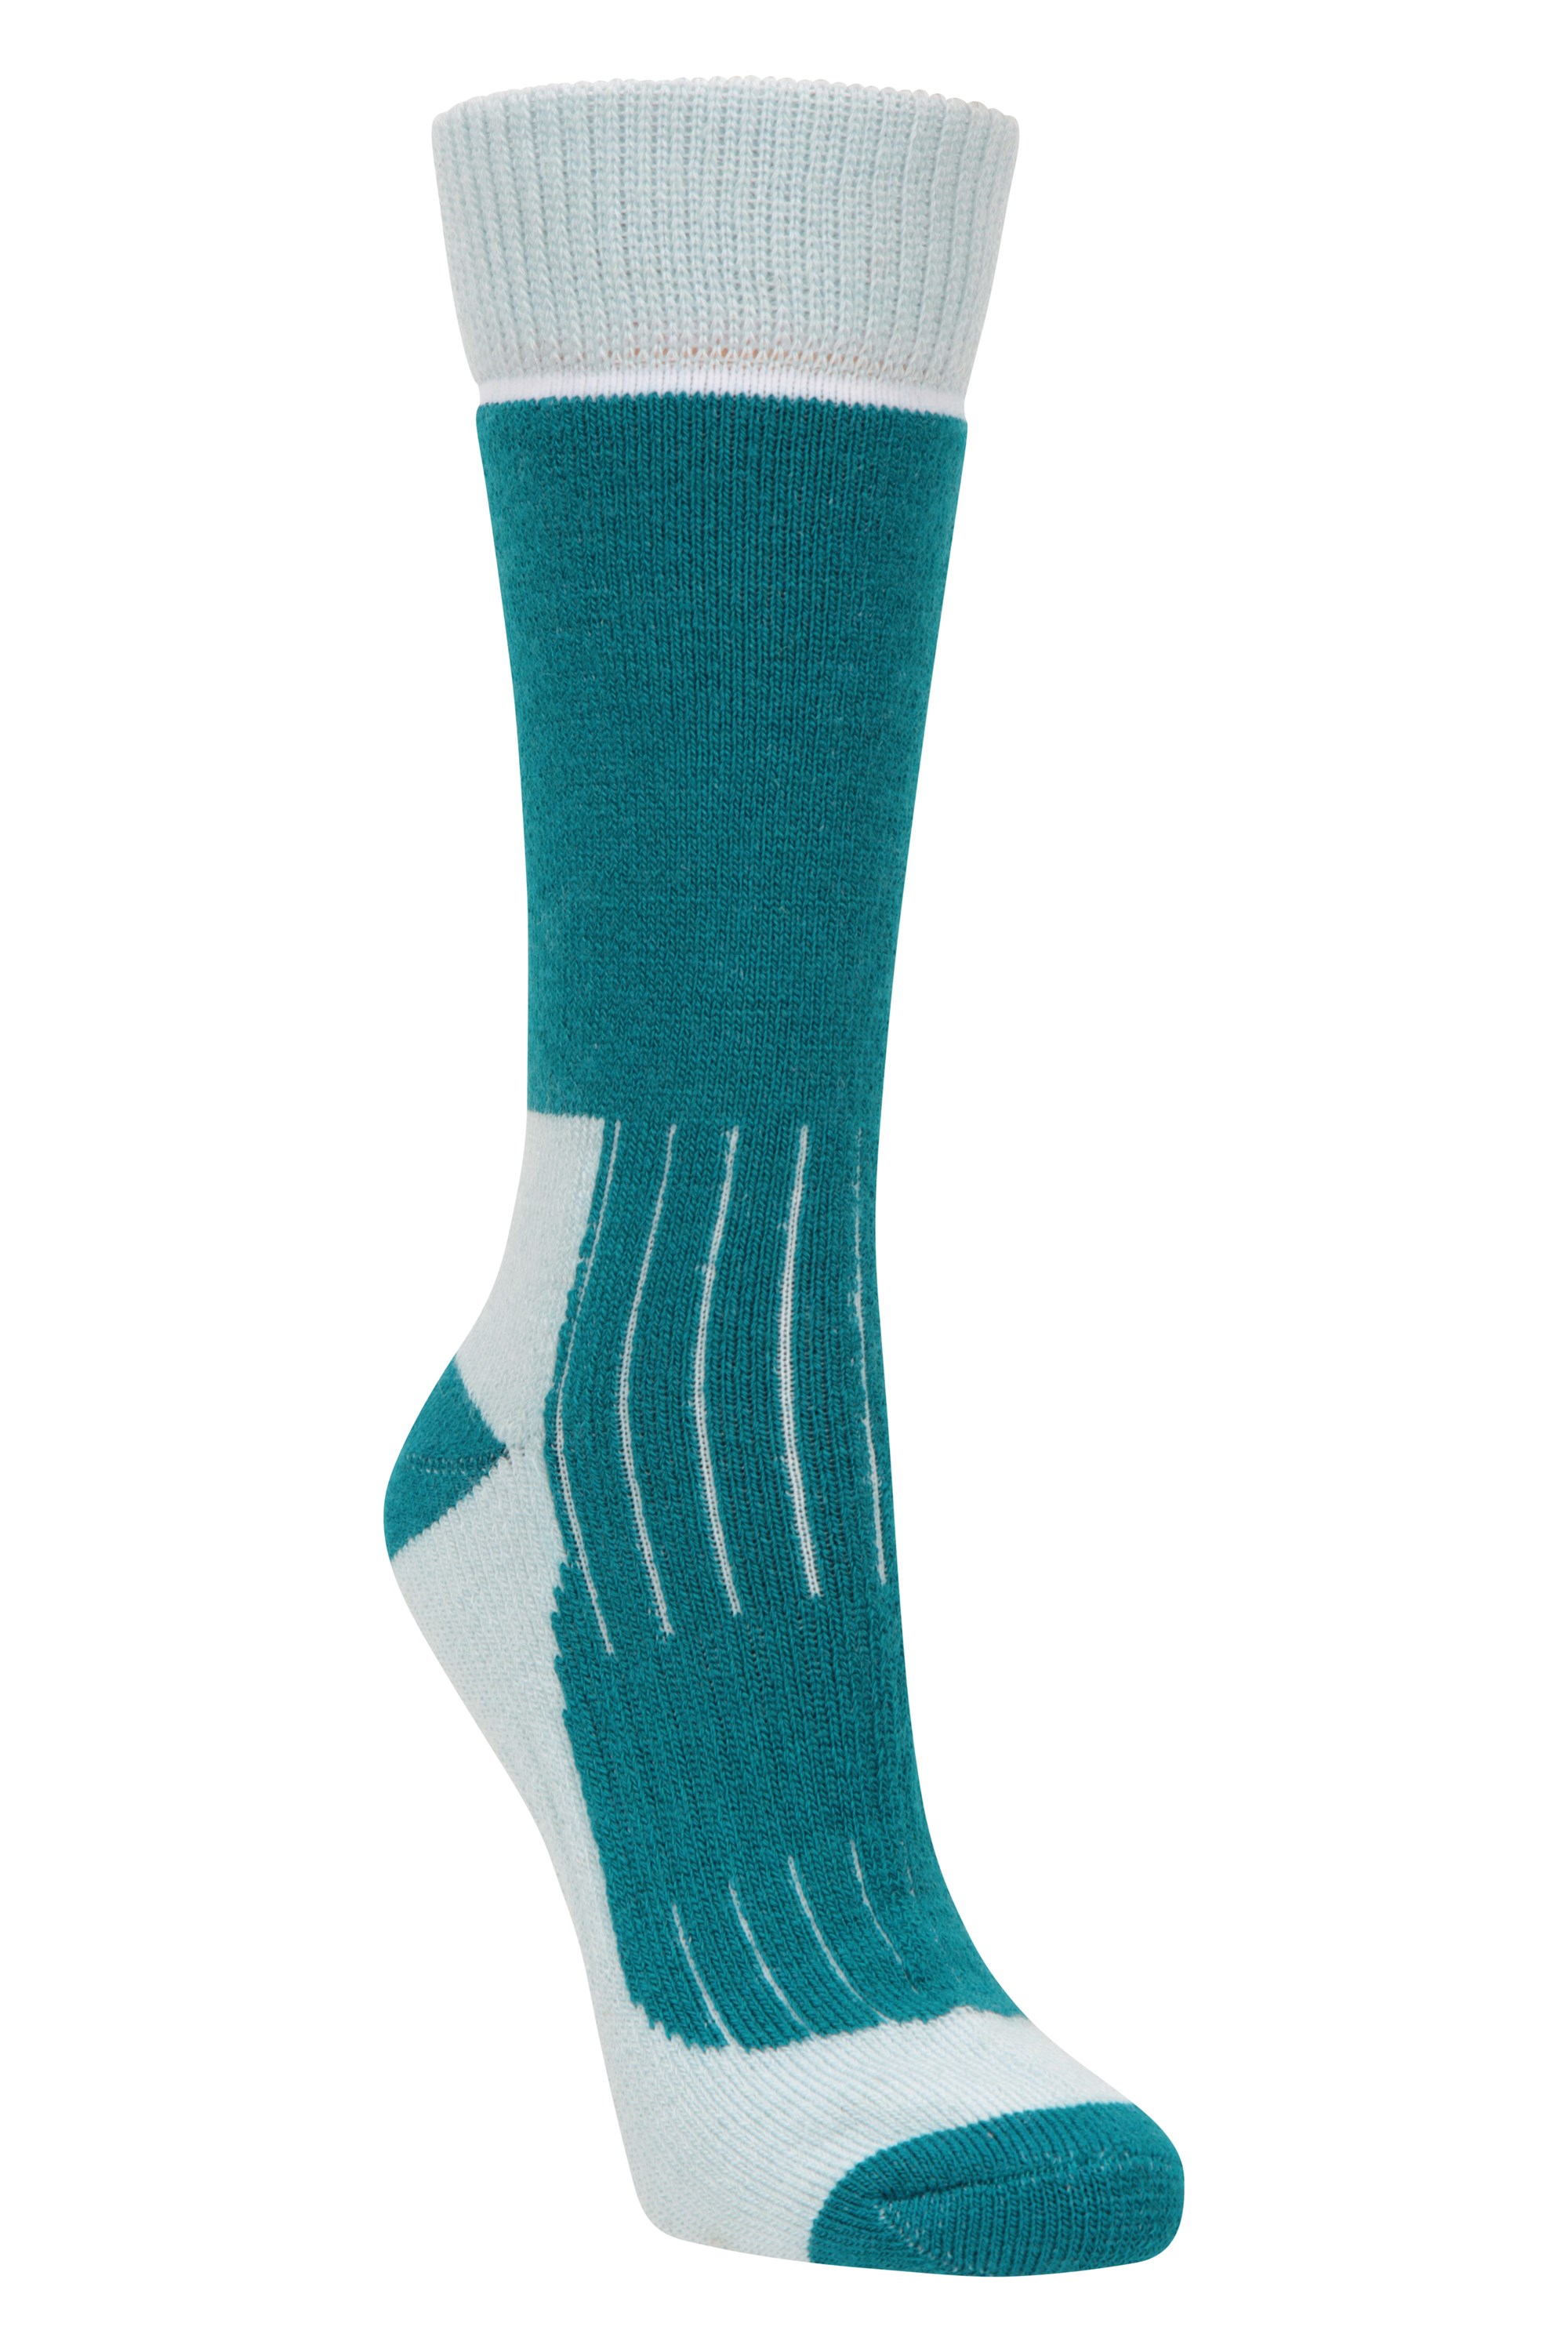 Merino Womens Explorer Socks - Teal